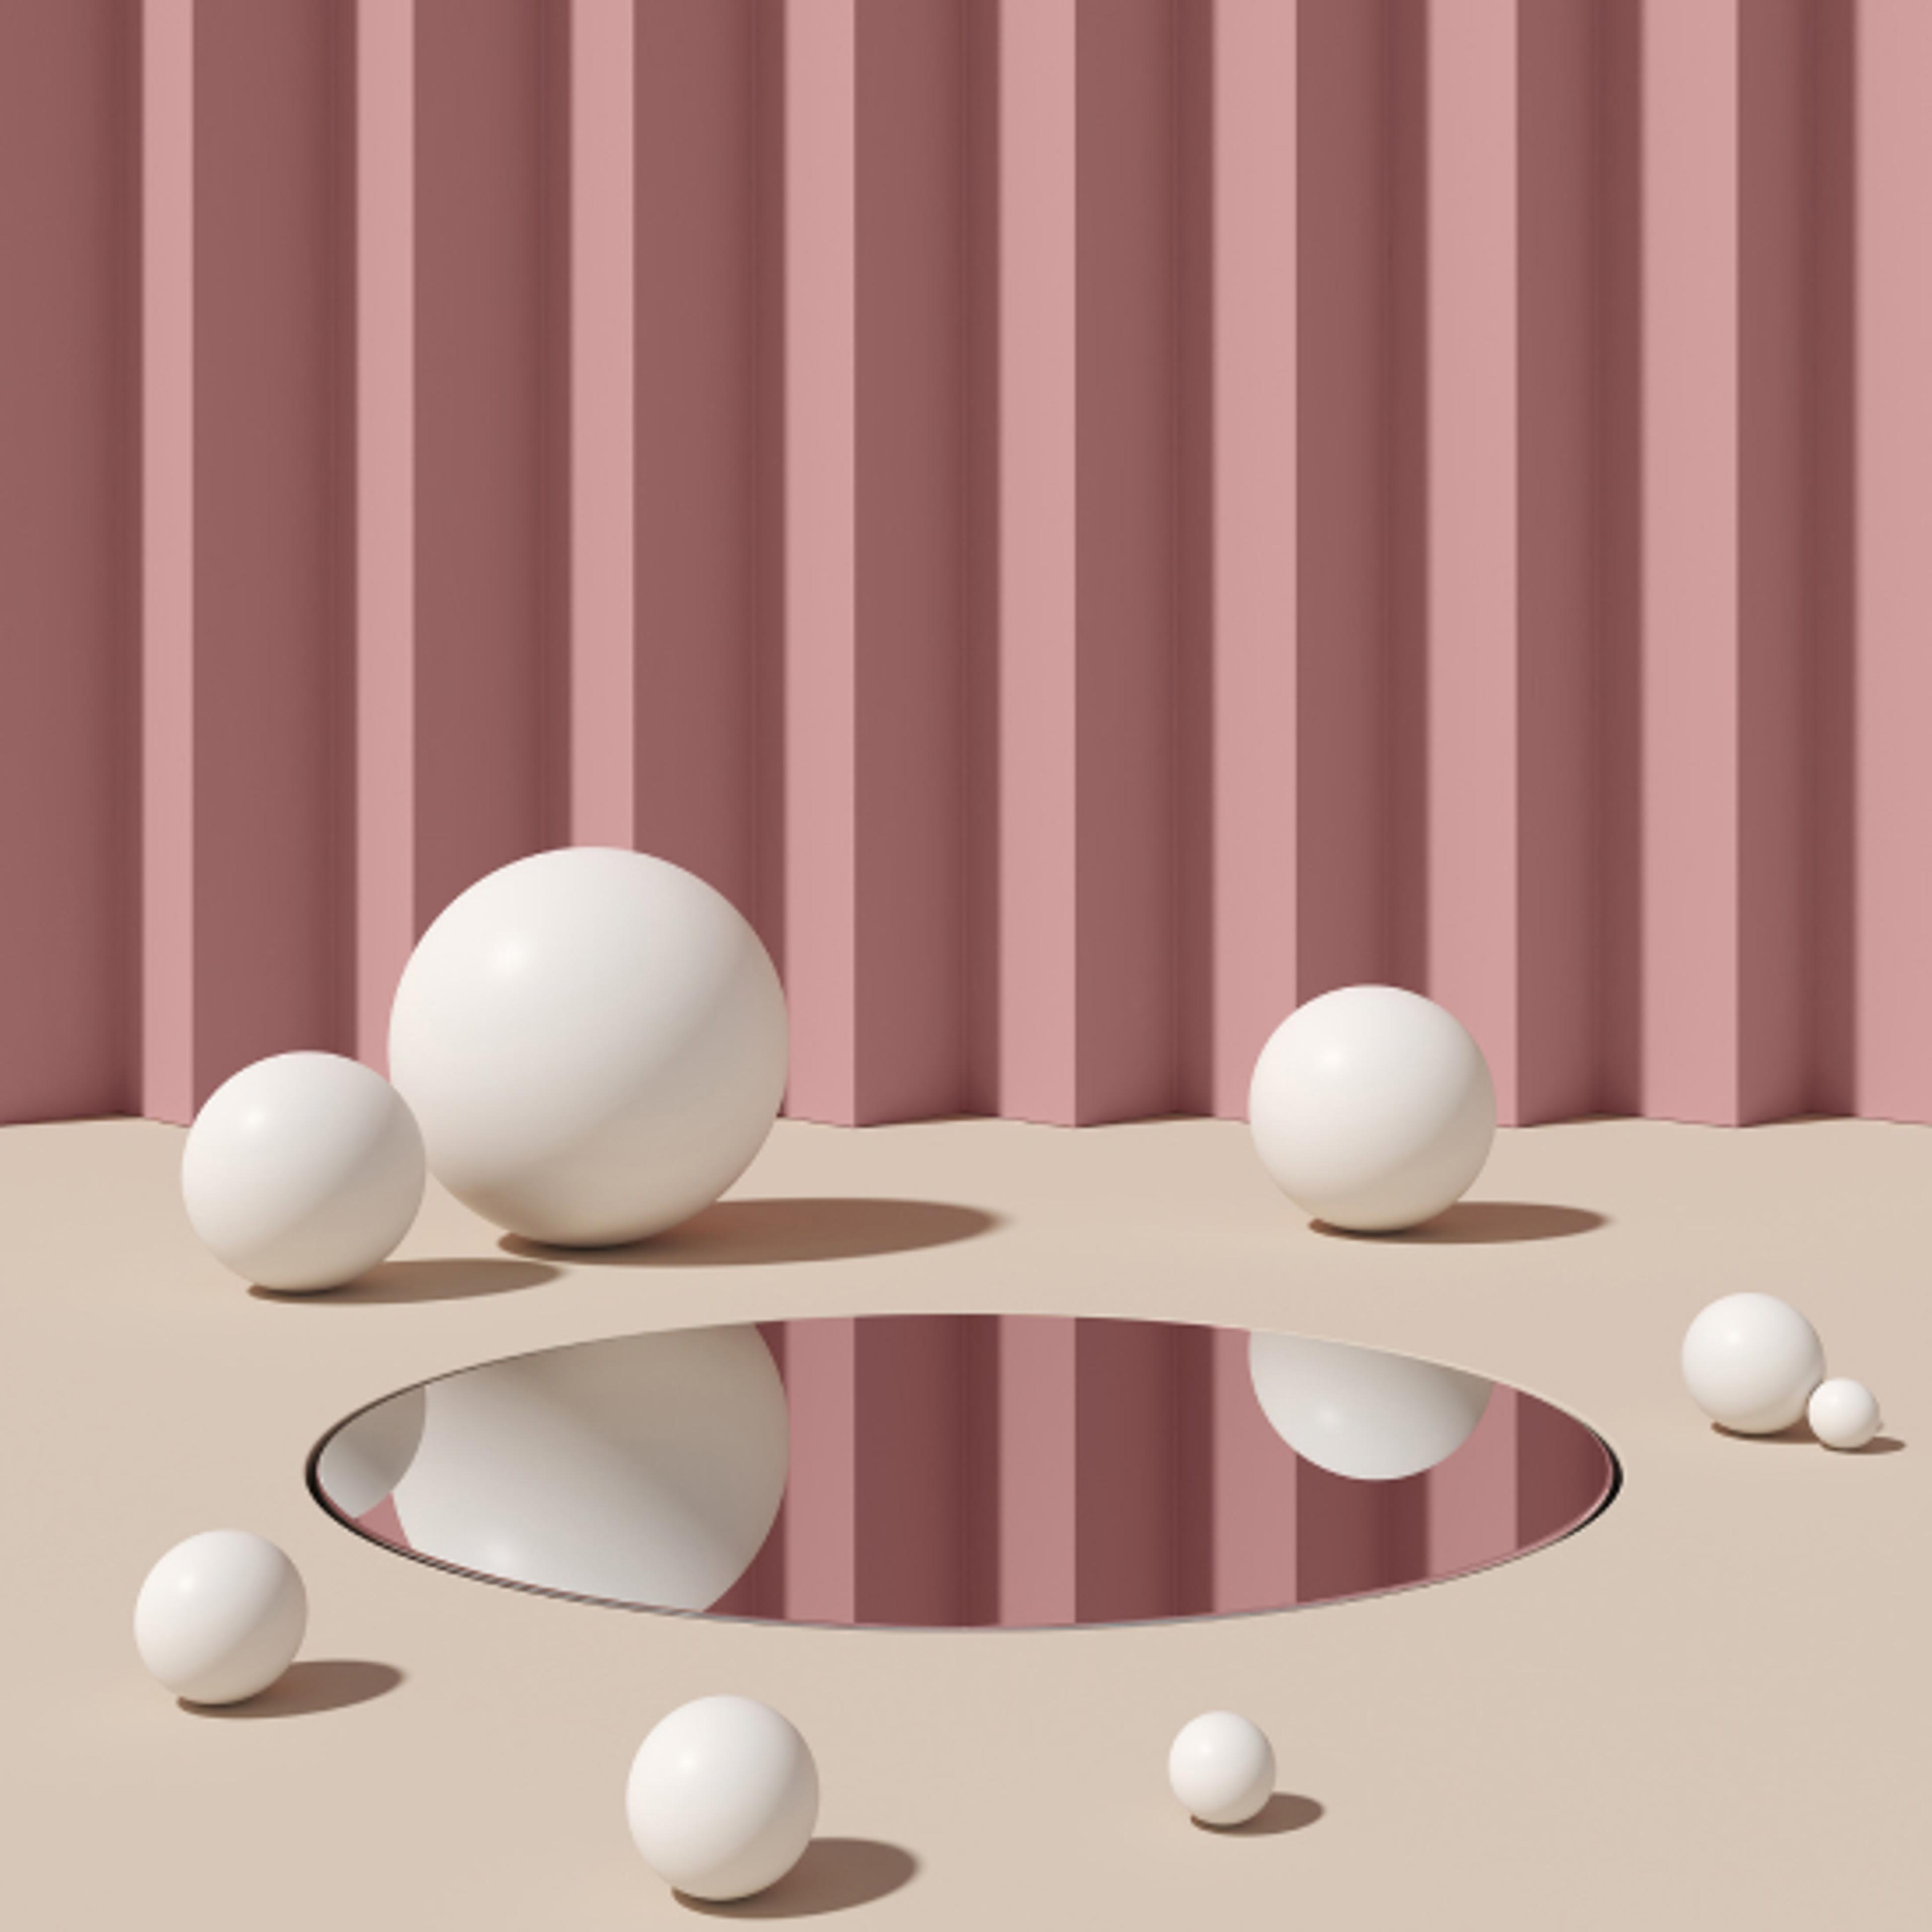 Hvite baller av ulik størrelse som ligger på et gulv med et hull i midten. Ruglete vegg i rosa i bakgrunn.